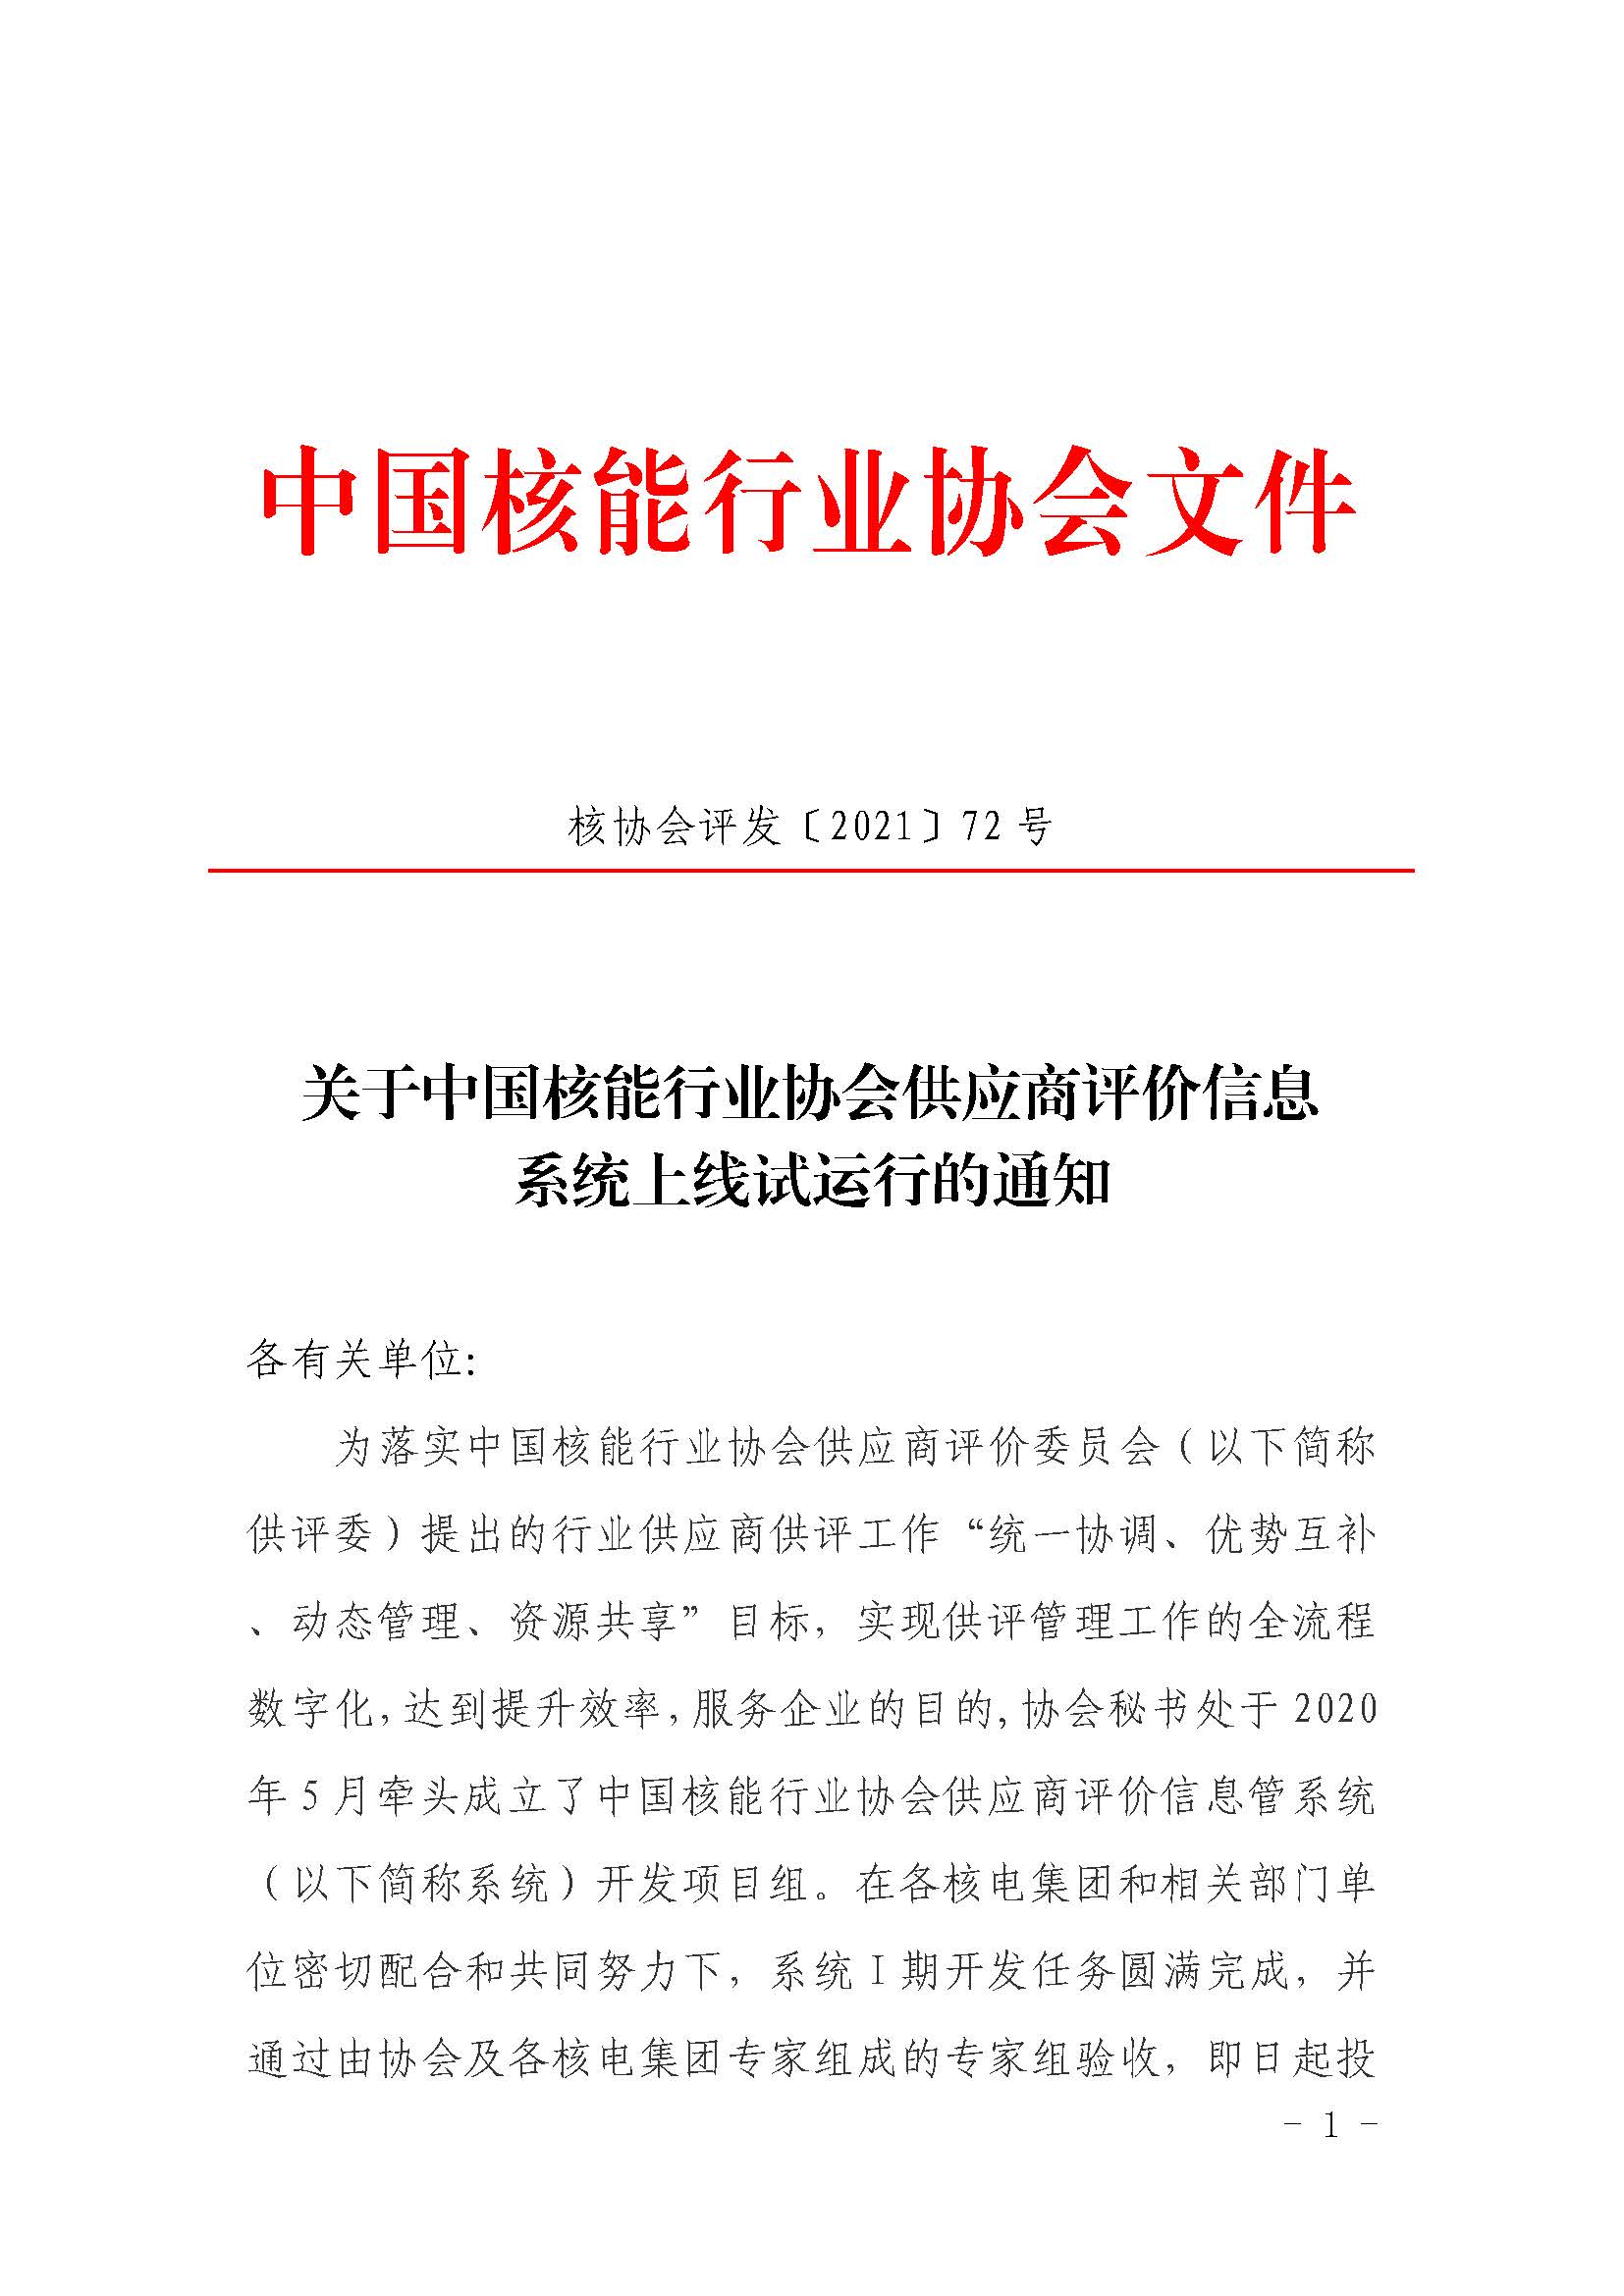 关于中国核能行业协会供应商评价信息系统上线试运行的通知_页面_01.jpg